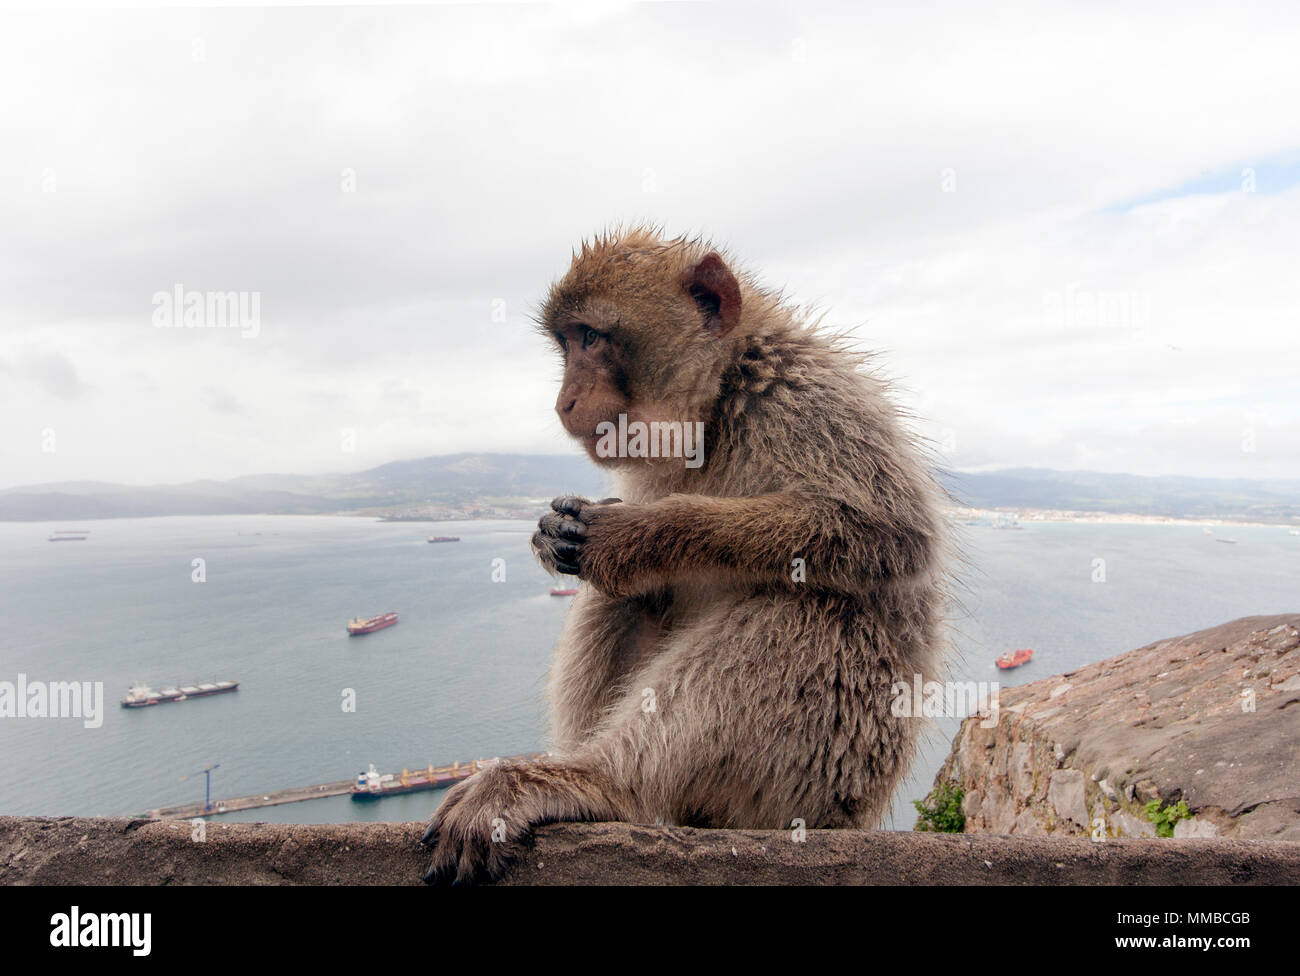 Macacos Barbary en el Peñón de Gibraltar Foto de stock